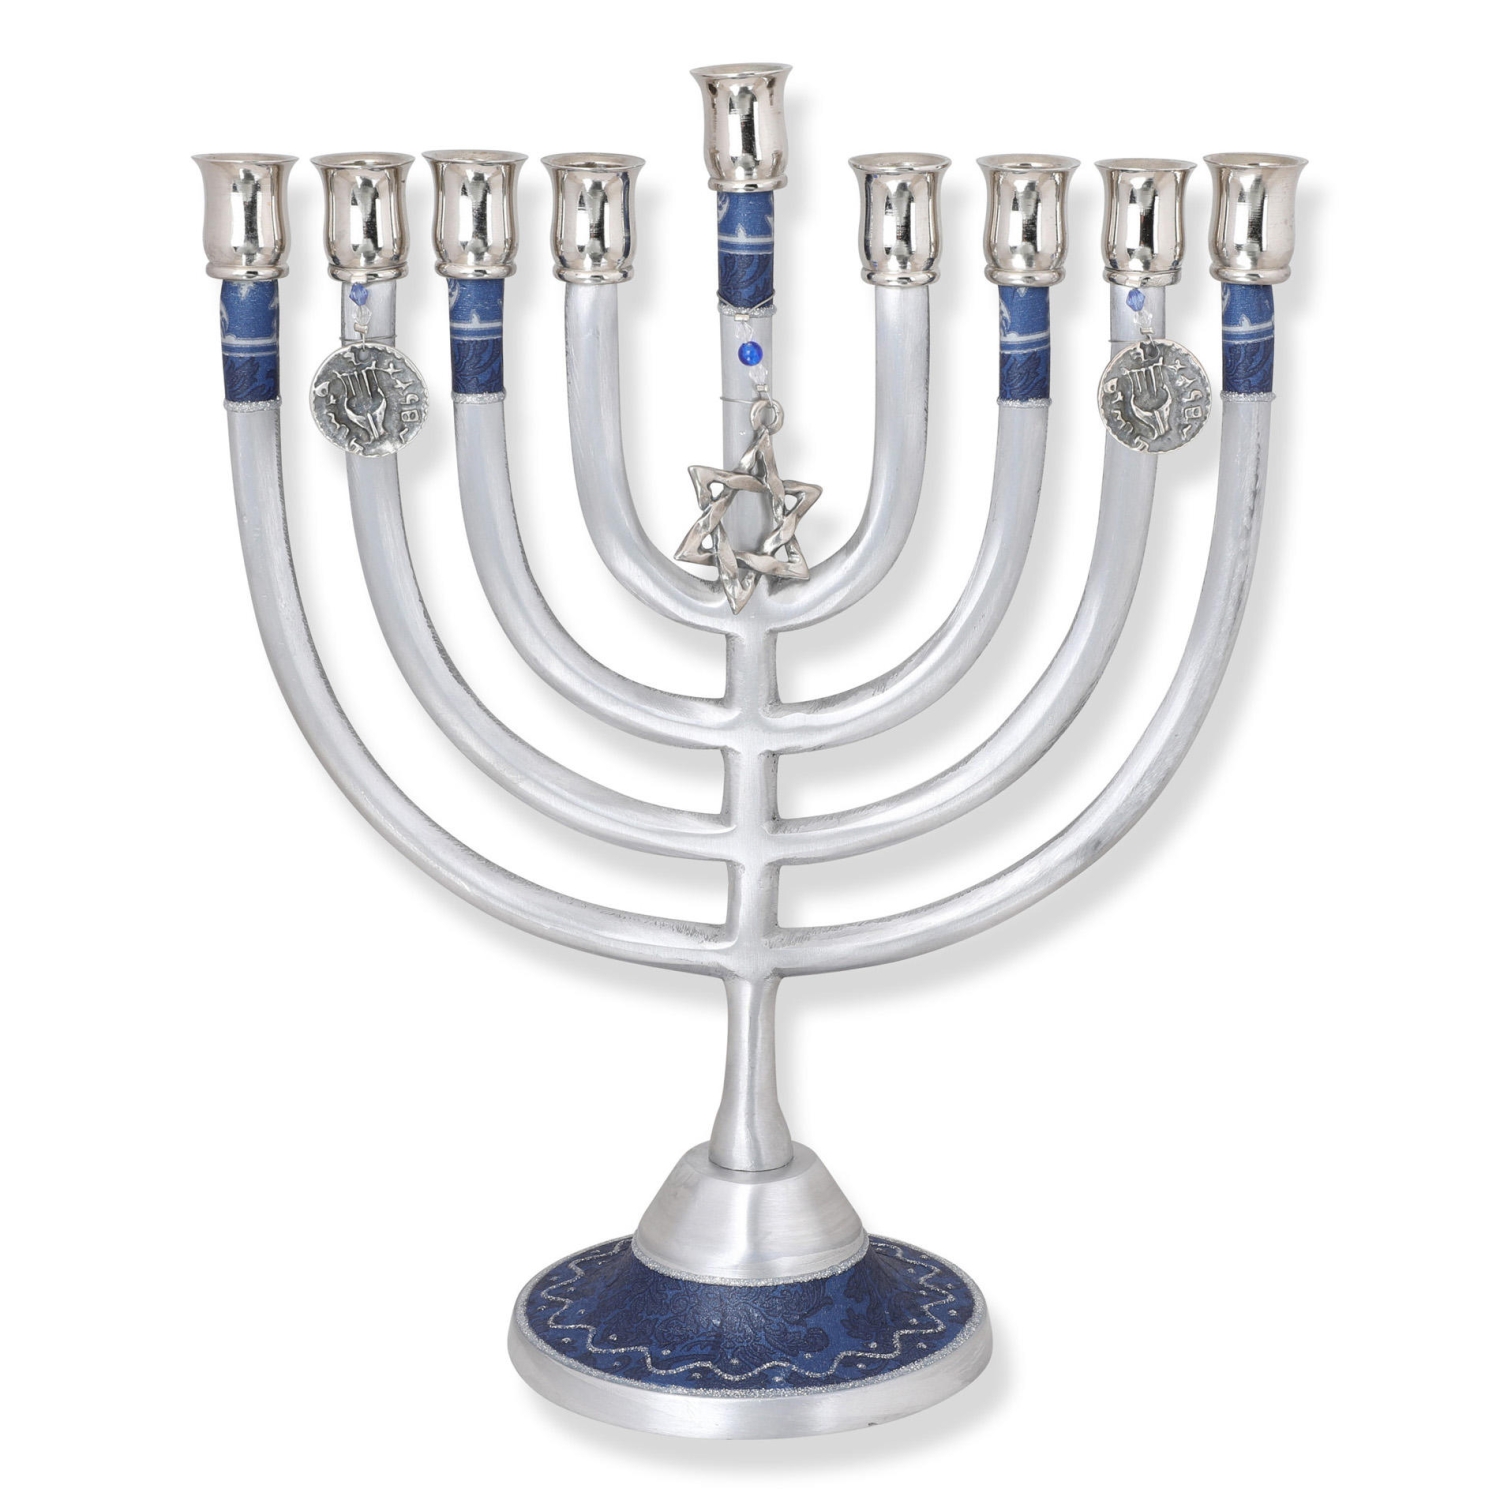 Lily Art Aluminum Classic Hanukkah Menorah with Star of David (Blue) - 8